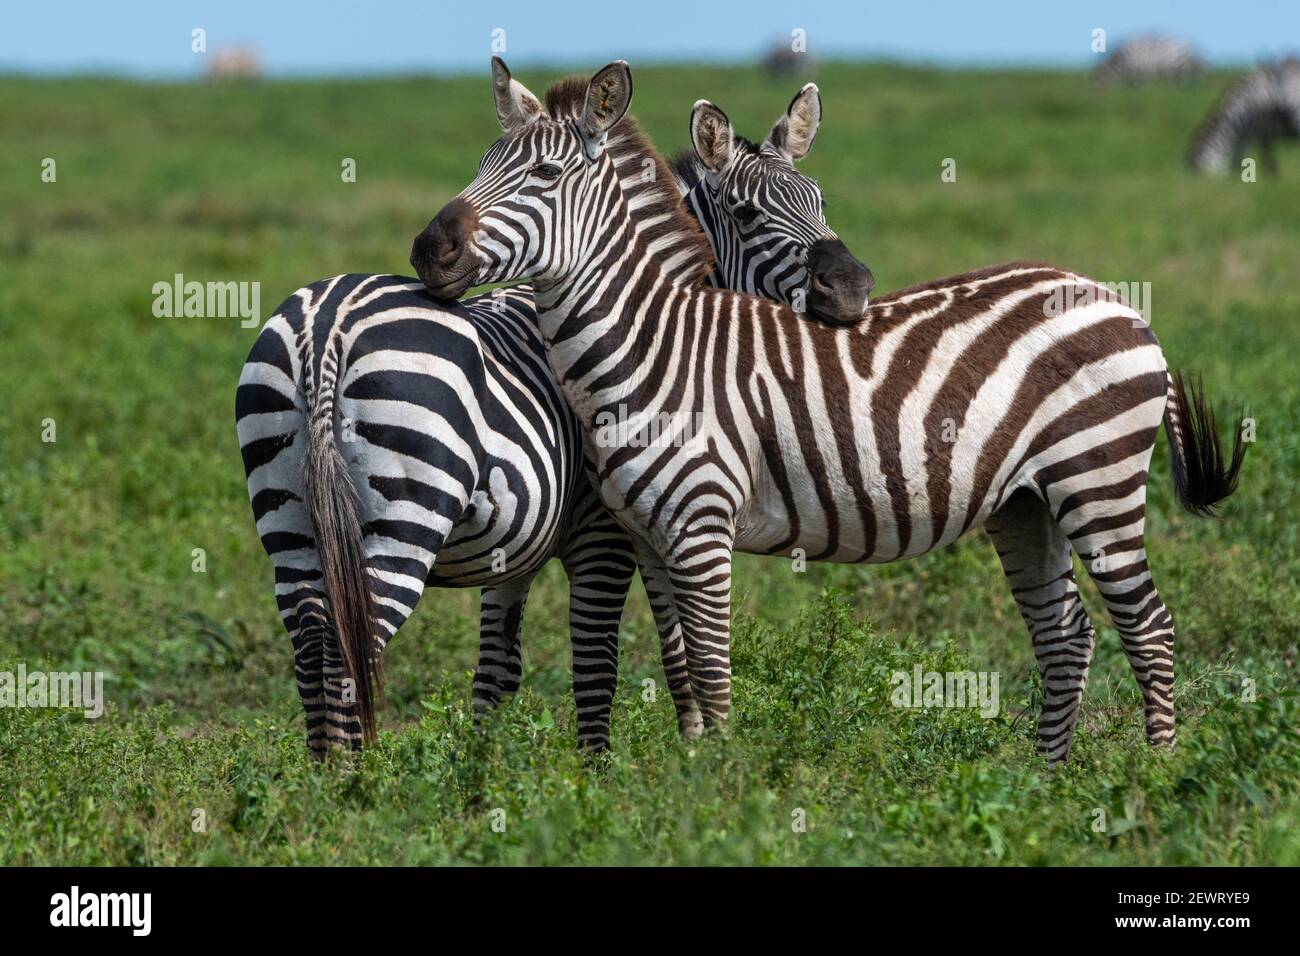 Zèbres des plaines (Equus quagga), Ndutu, aire de conservation de Ngorongoro, Serengeti, Tanzanie, Afrique de l'est, Afrique Banque D'Images